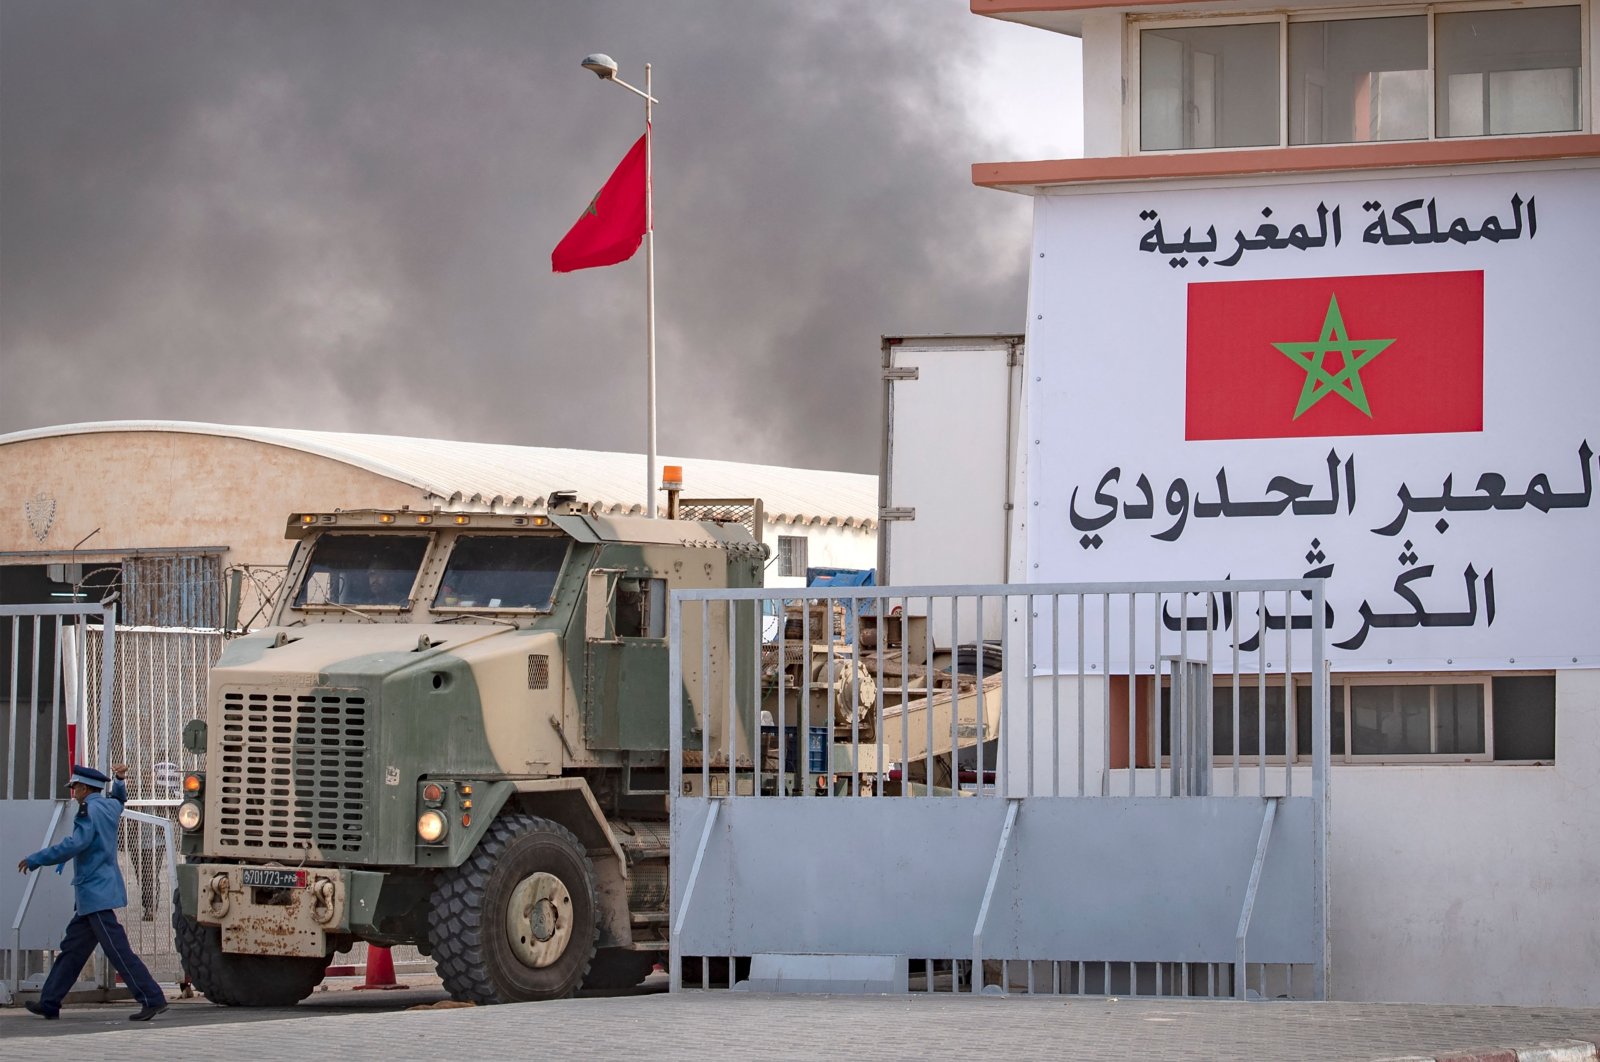 المغرب يحرج الجزائر بمنظمة الأمن بأوروبا بعد استفزازات جديدة